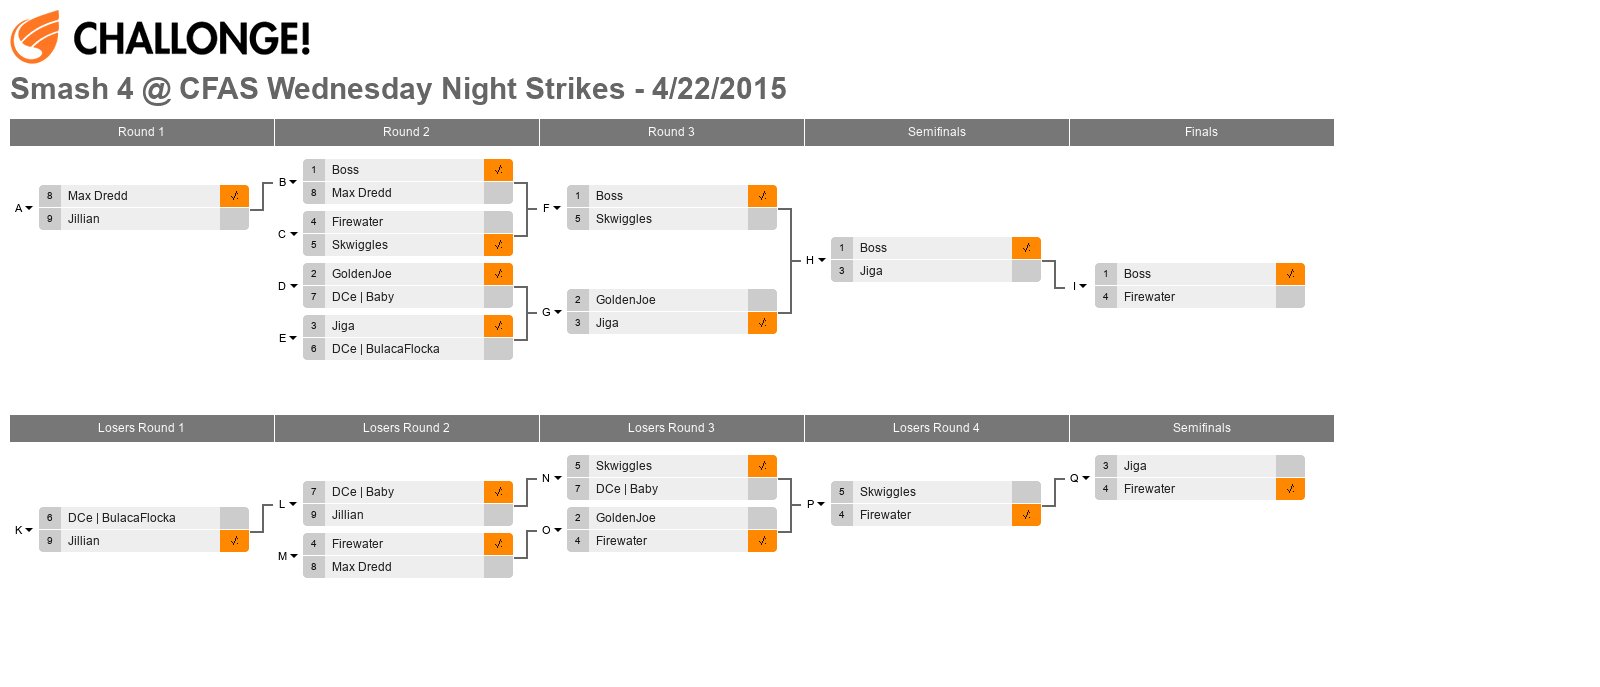 Smash 4 @ CFAS Wednesday Night Strikes - 4/22/2015